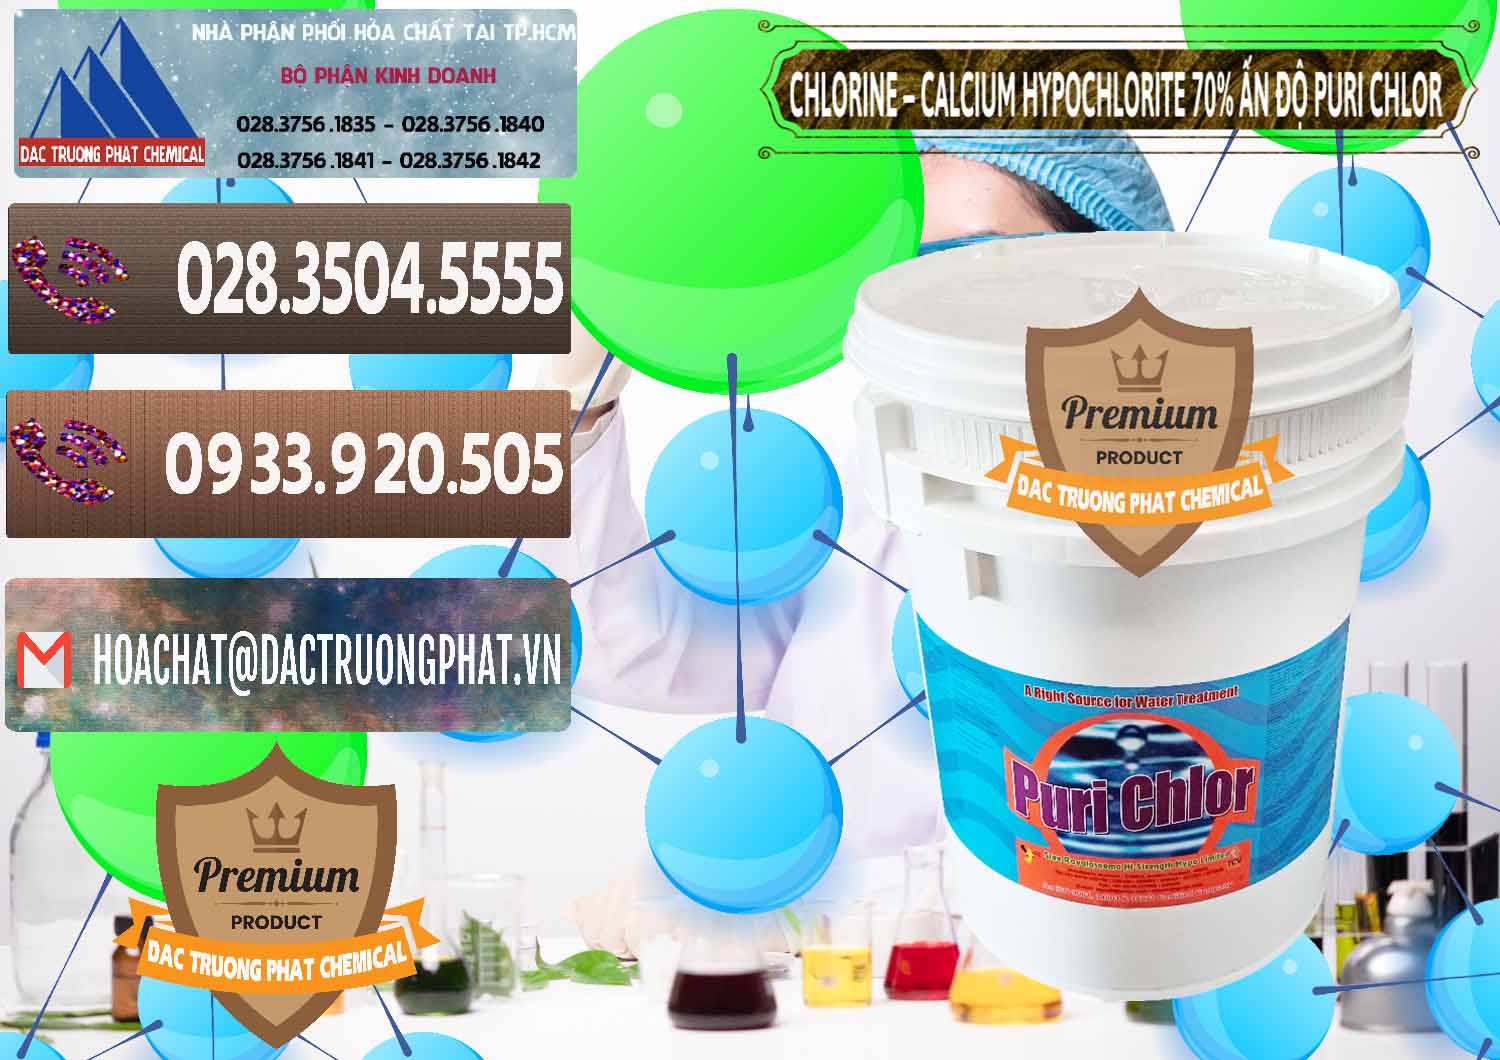 Kinh doanh _ bán Chlorine – Clorin 70% Puri Chlo Ấn Độ India - 0123 - Nhà cung cấp và phân phối hóa chất tại TP.HCM - hoachatviet.net